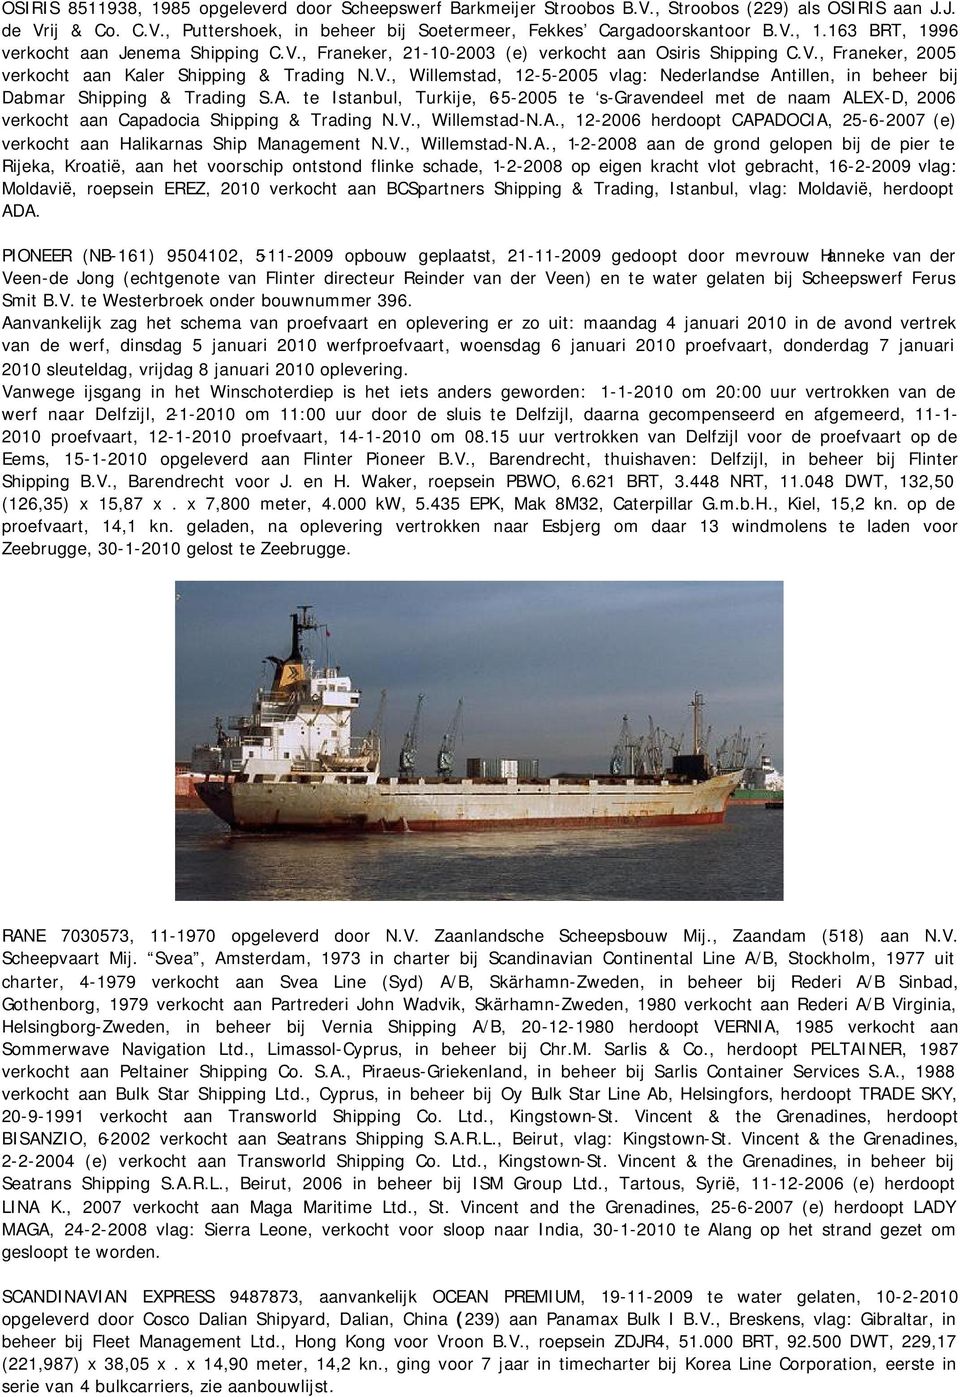 A. te Istanbul, Turkije, 6-5-2005 te s-gravendeel met de naam ALEX-D, 2006 verkocht aan Capadocia Shipping & Trading N.V., Willemstad-N.A., 12-2006 herdoopt CAPADOCIA, 25-6-2007 (e) verkocht aan Halikarnas Ship Management N.